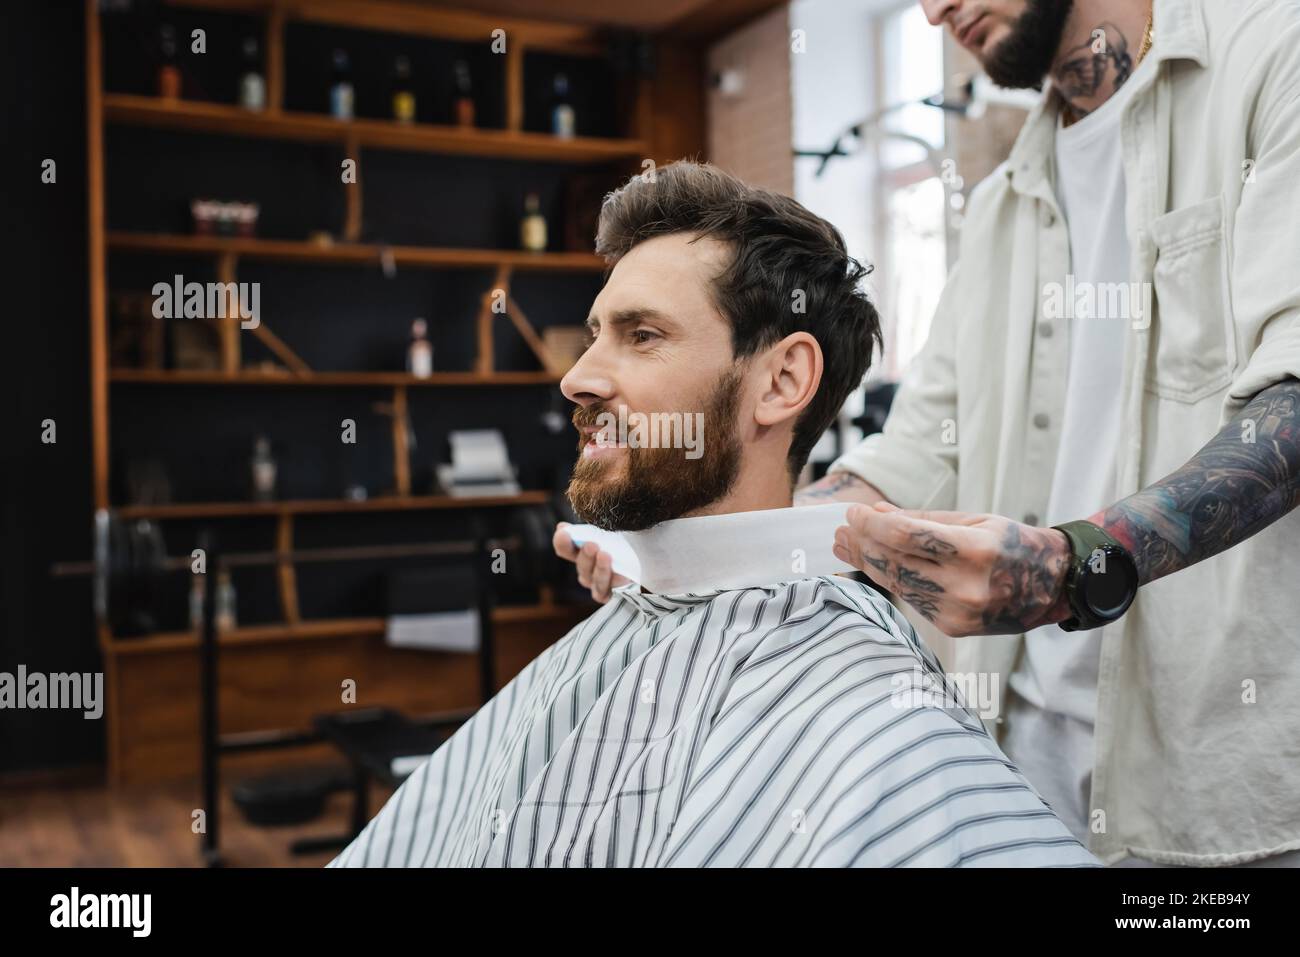 Tätowierte Barbier, der den Hals des bärtigen Mannes mit Haarreif umwickelt, Stockbild Stockfoto